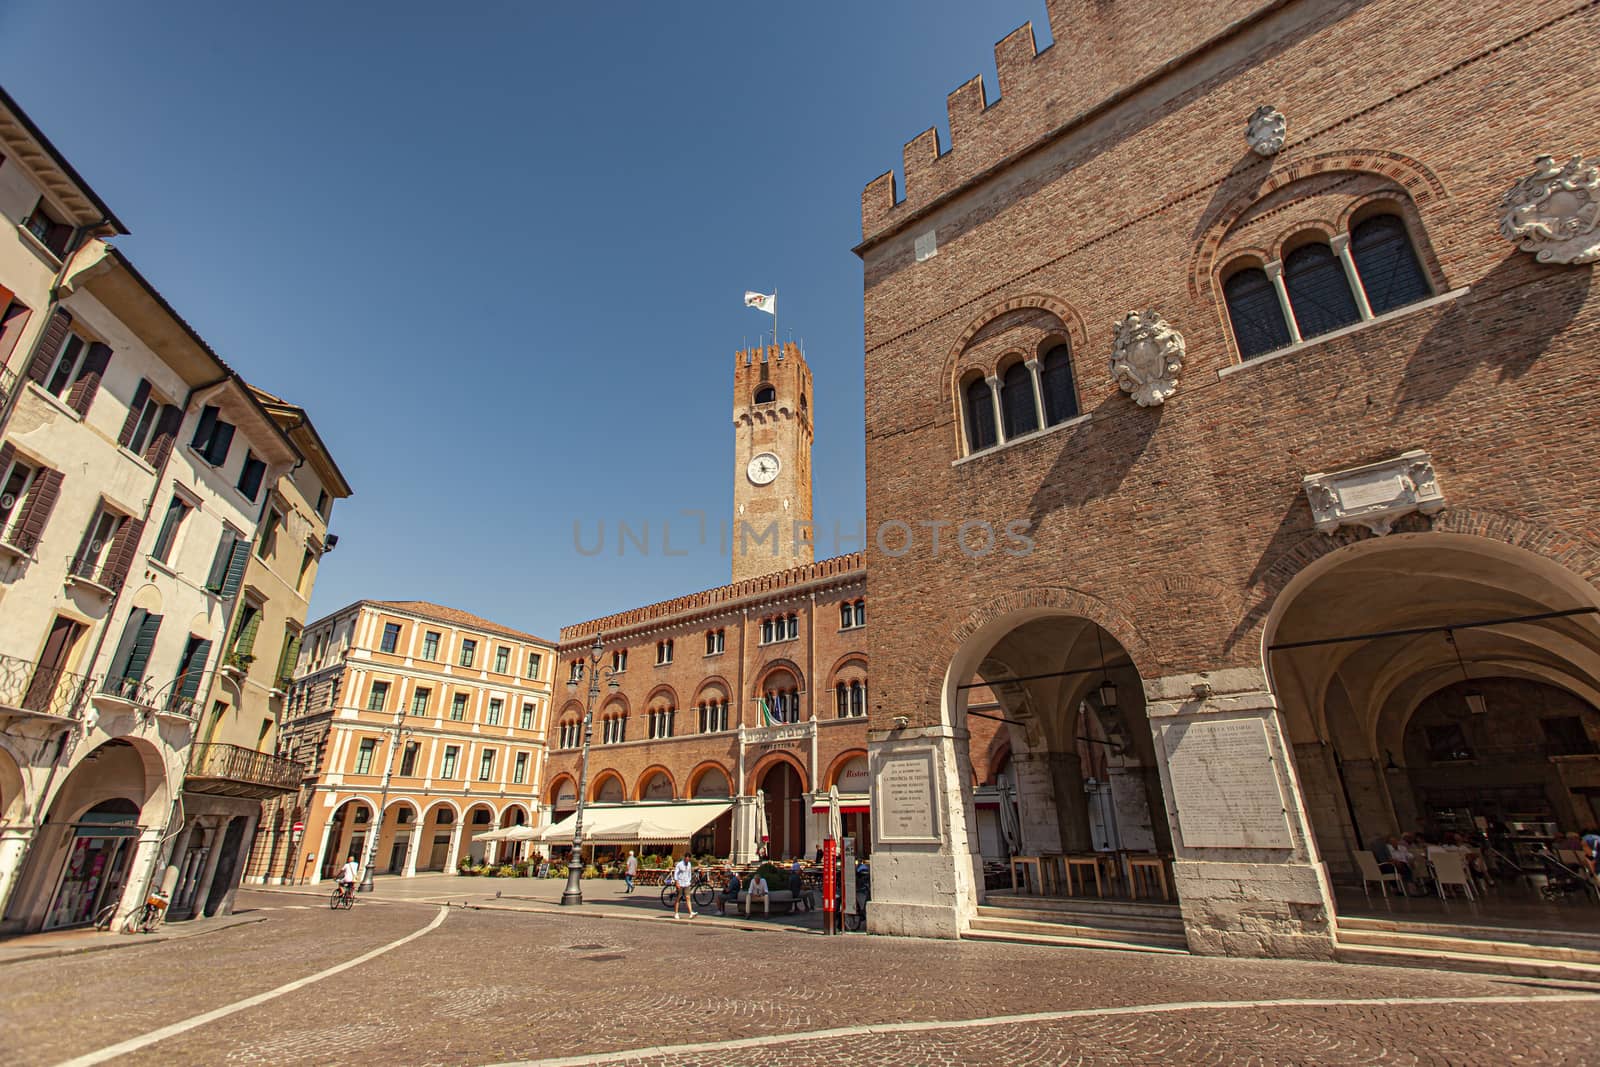 Piazza dei Signori in Treviso in Italy by pippocarlot